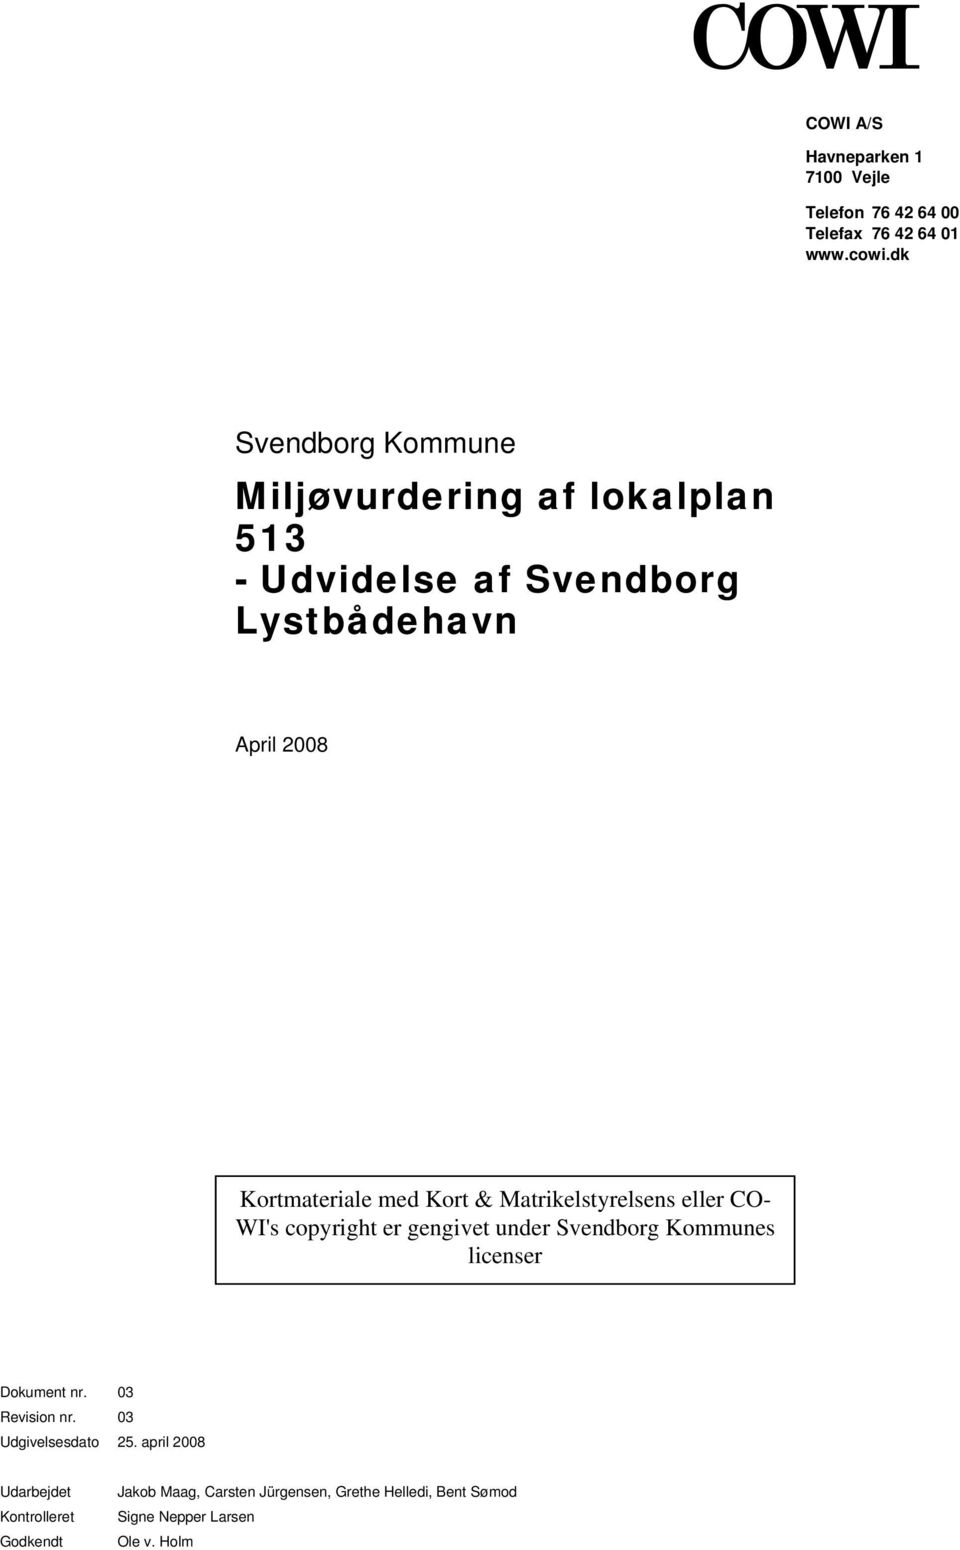 Kort & Matrikelstyrelsens eller CO- WI's copyright er gengivet under Svendborg Kommunes licenser Dokument nr.